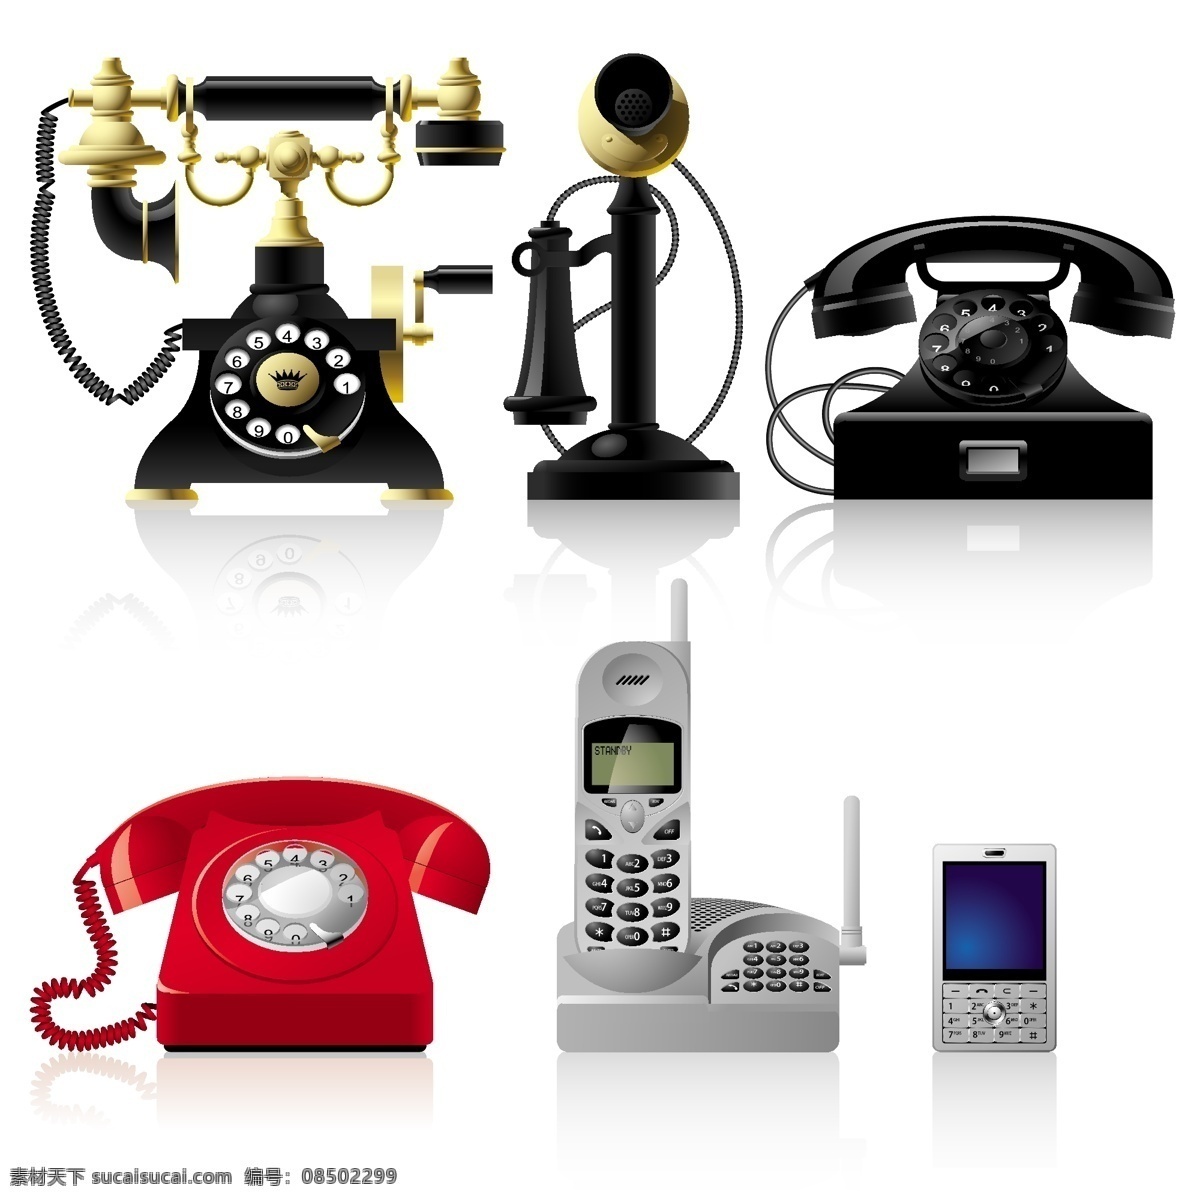 新老电话向量 生活的载体 载体 商品 格式 怀旧 电话 telephonematerial 白色